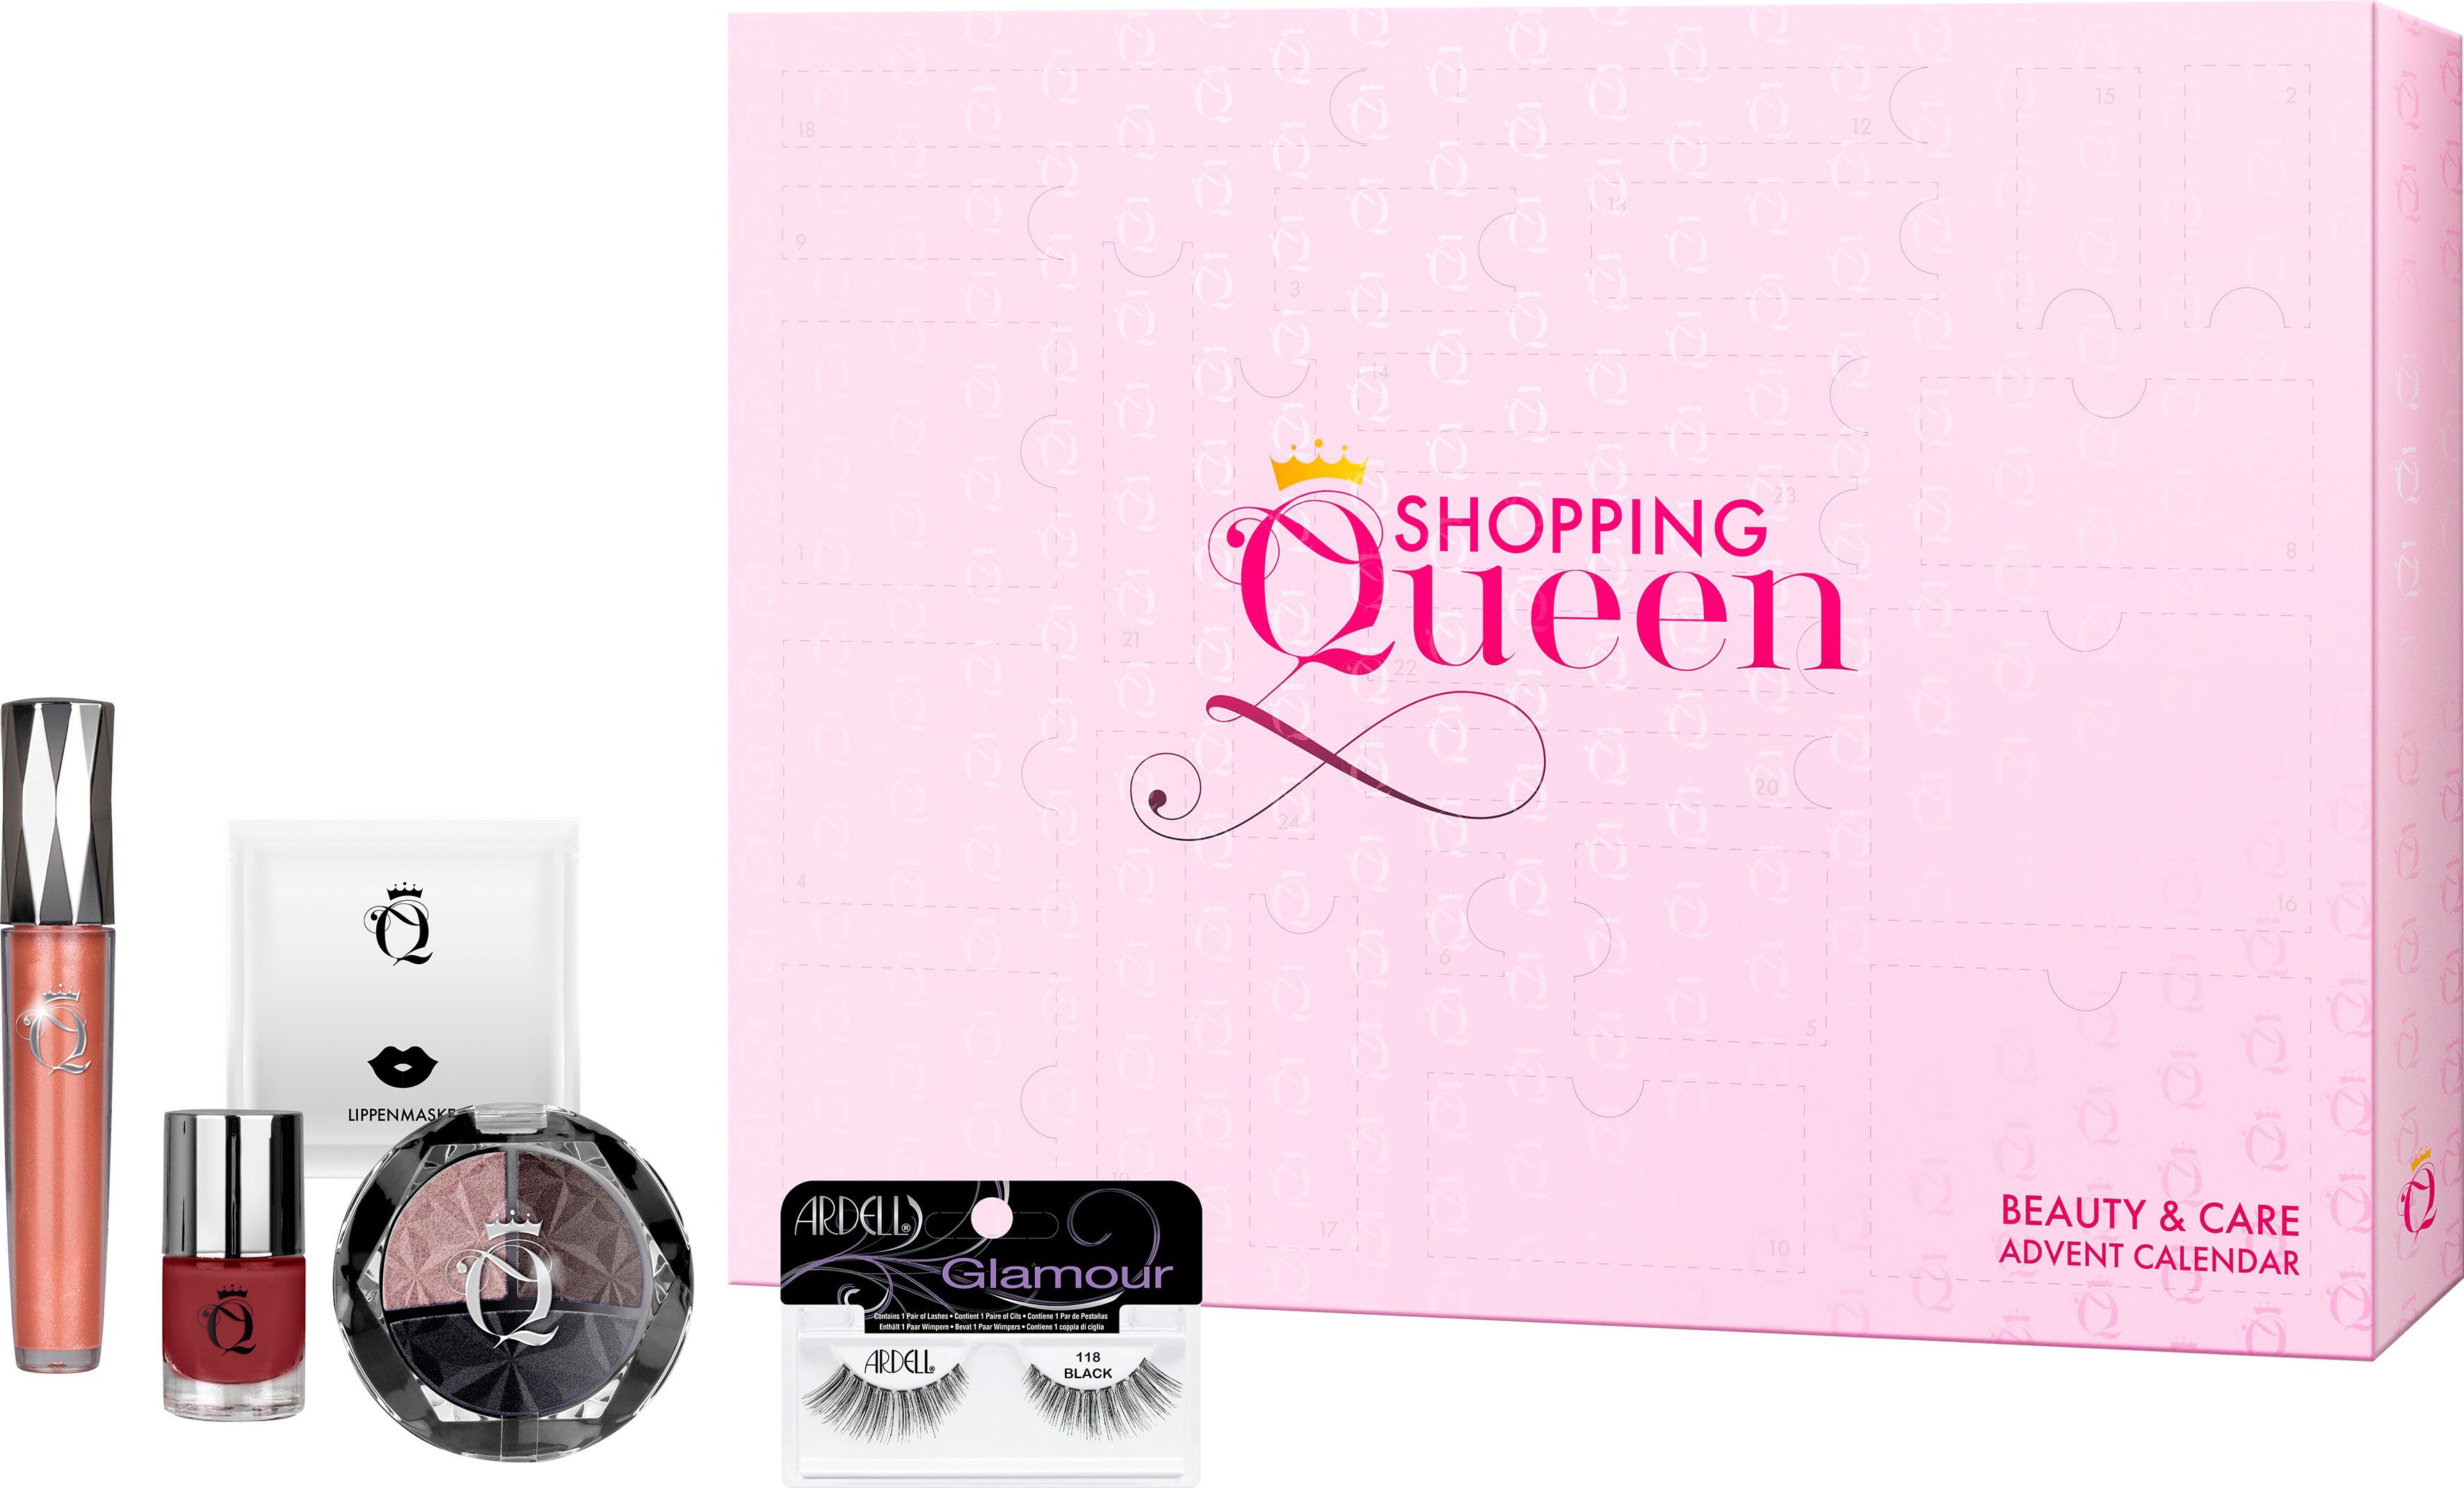 Shopping ARDELL Queen Queen Adventskalender Shopping meets